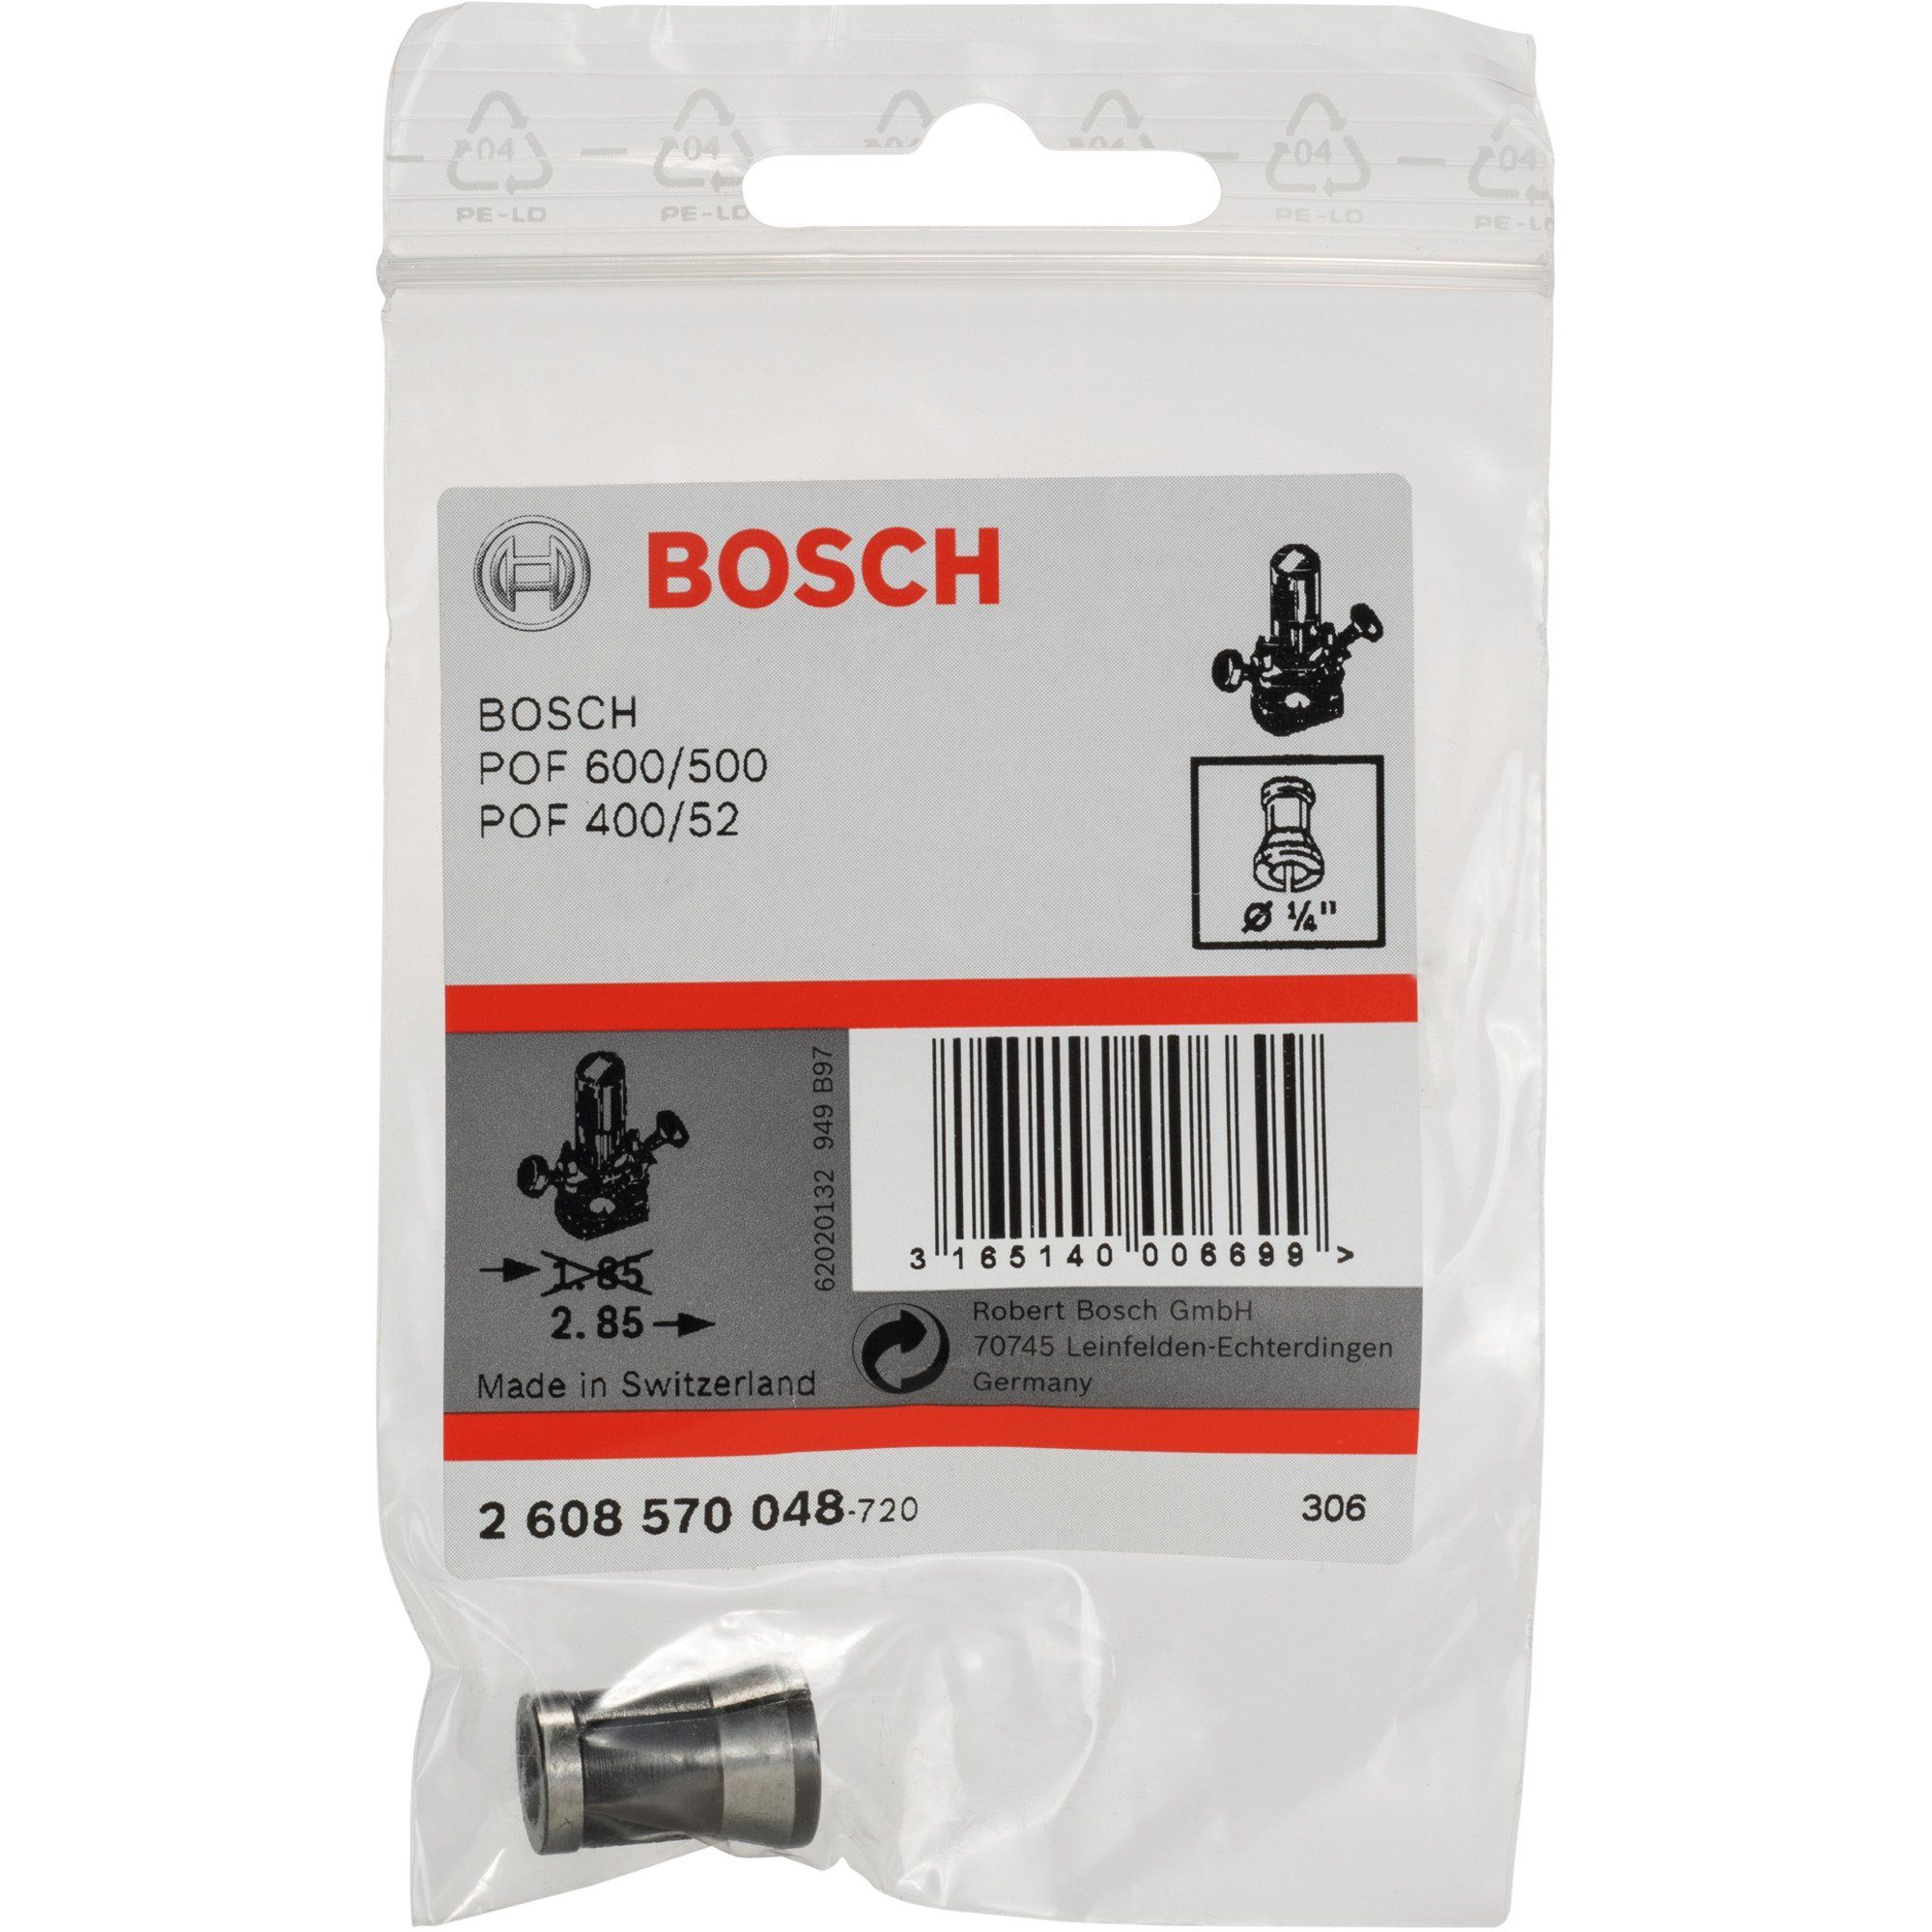 Bosch Accessories BOSCH Spannzange 1/4", Fräse Professional ohne Ø Bosch